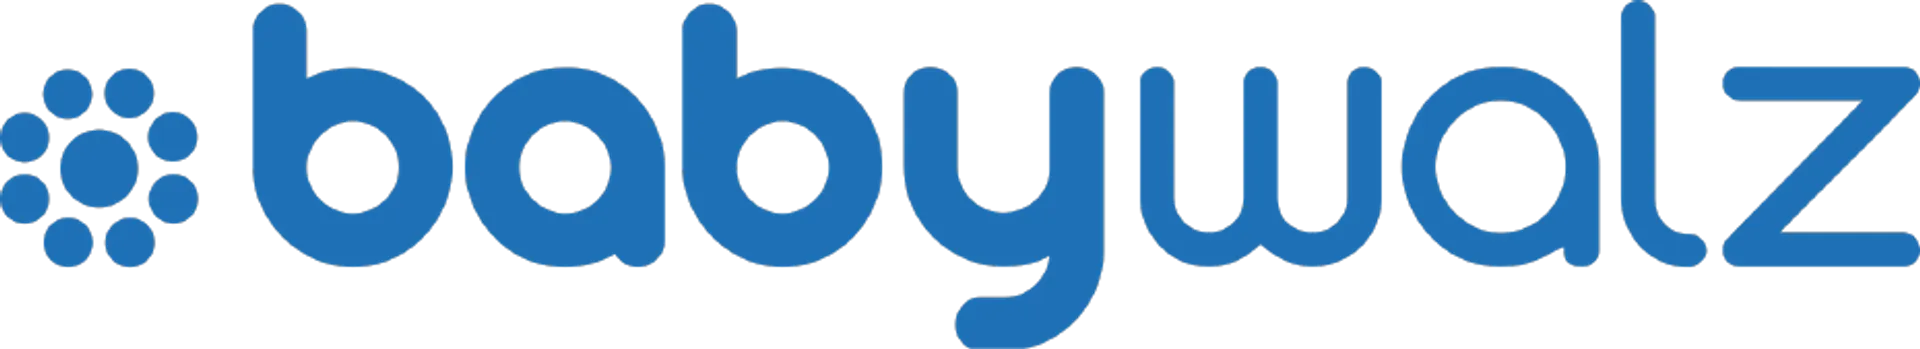 BABY WALZ logo die aktuell Flugblatt